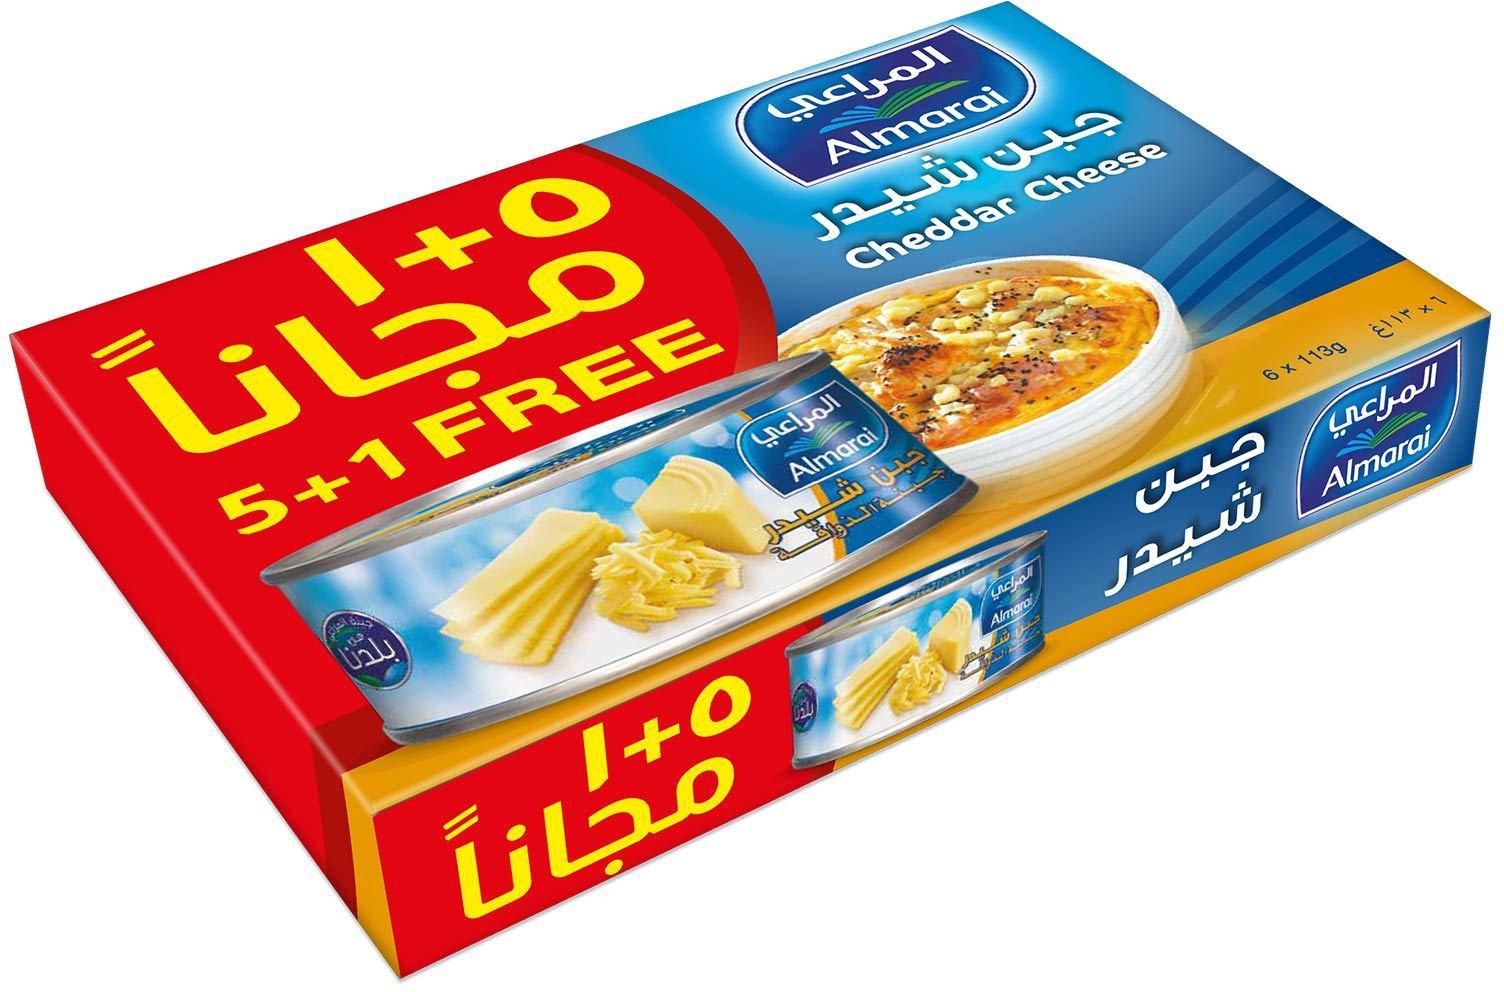 Almarai full fat cheddar cheese 113 g x 5 + 1 free